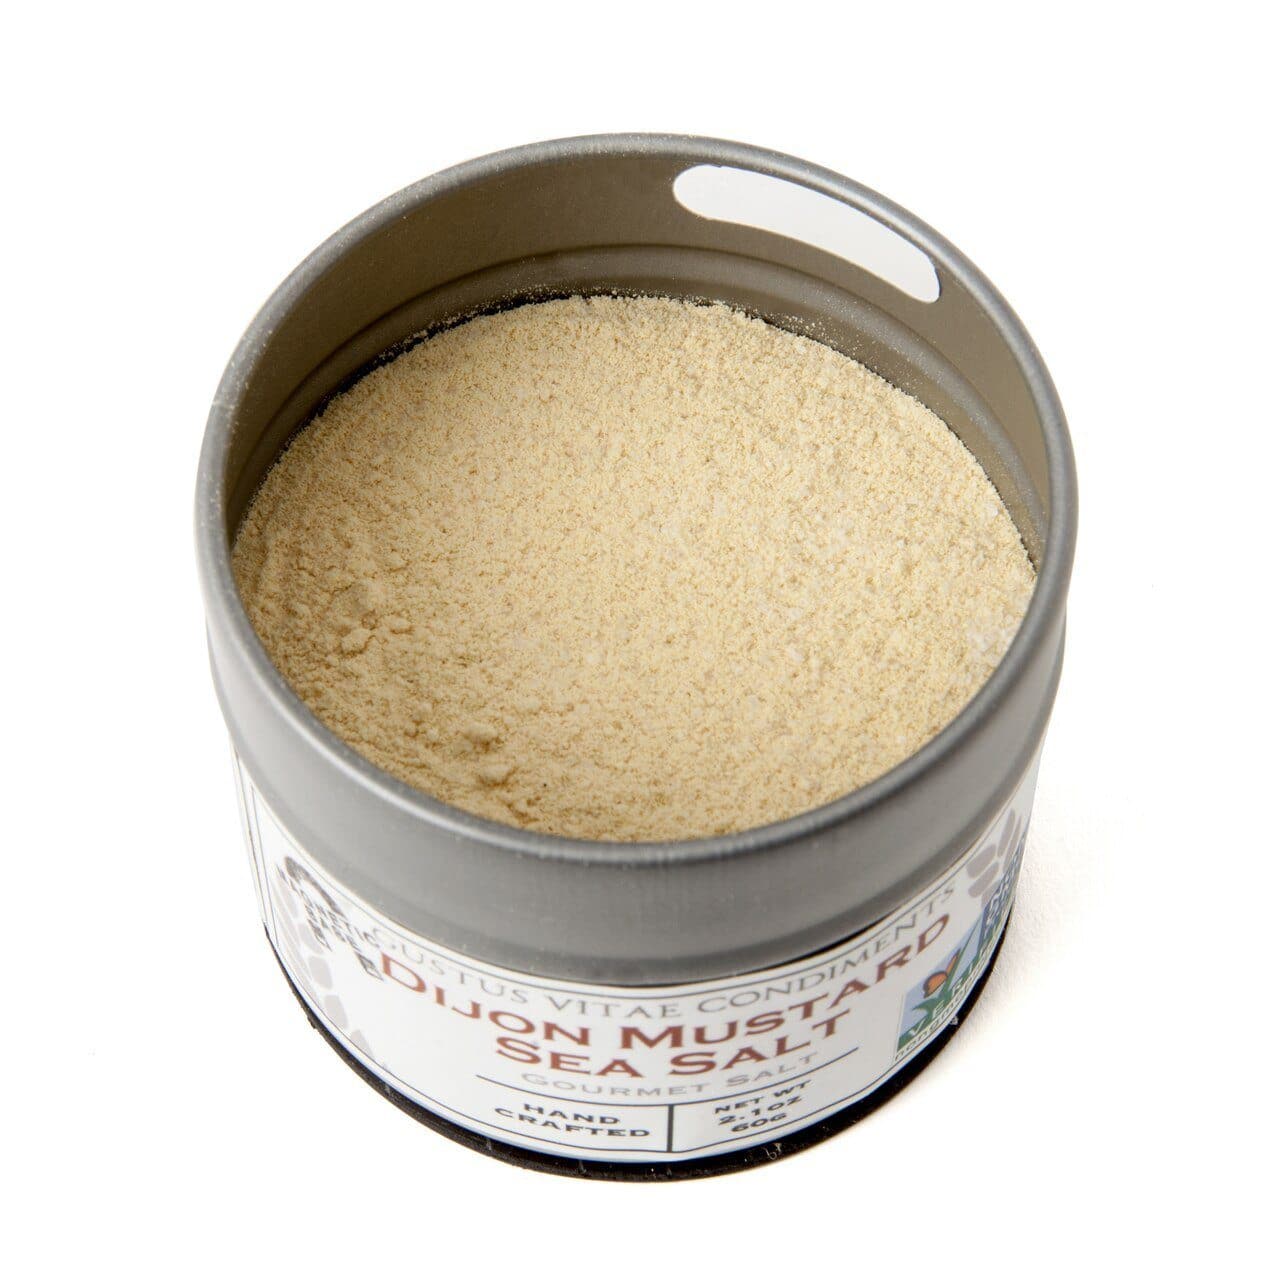 Dijon Mustard Sea Salt-2